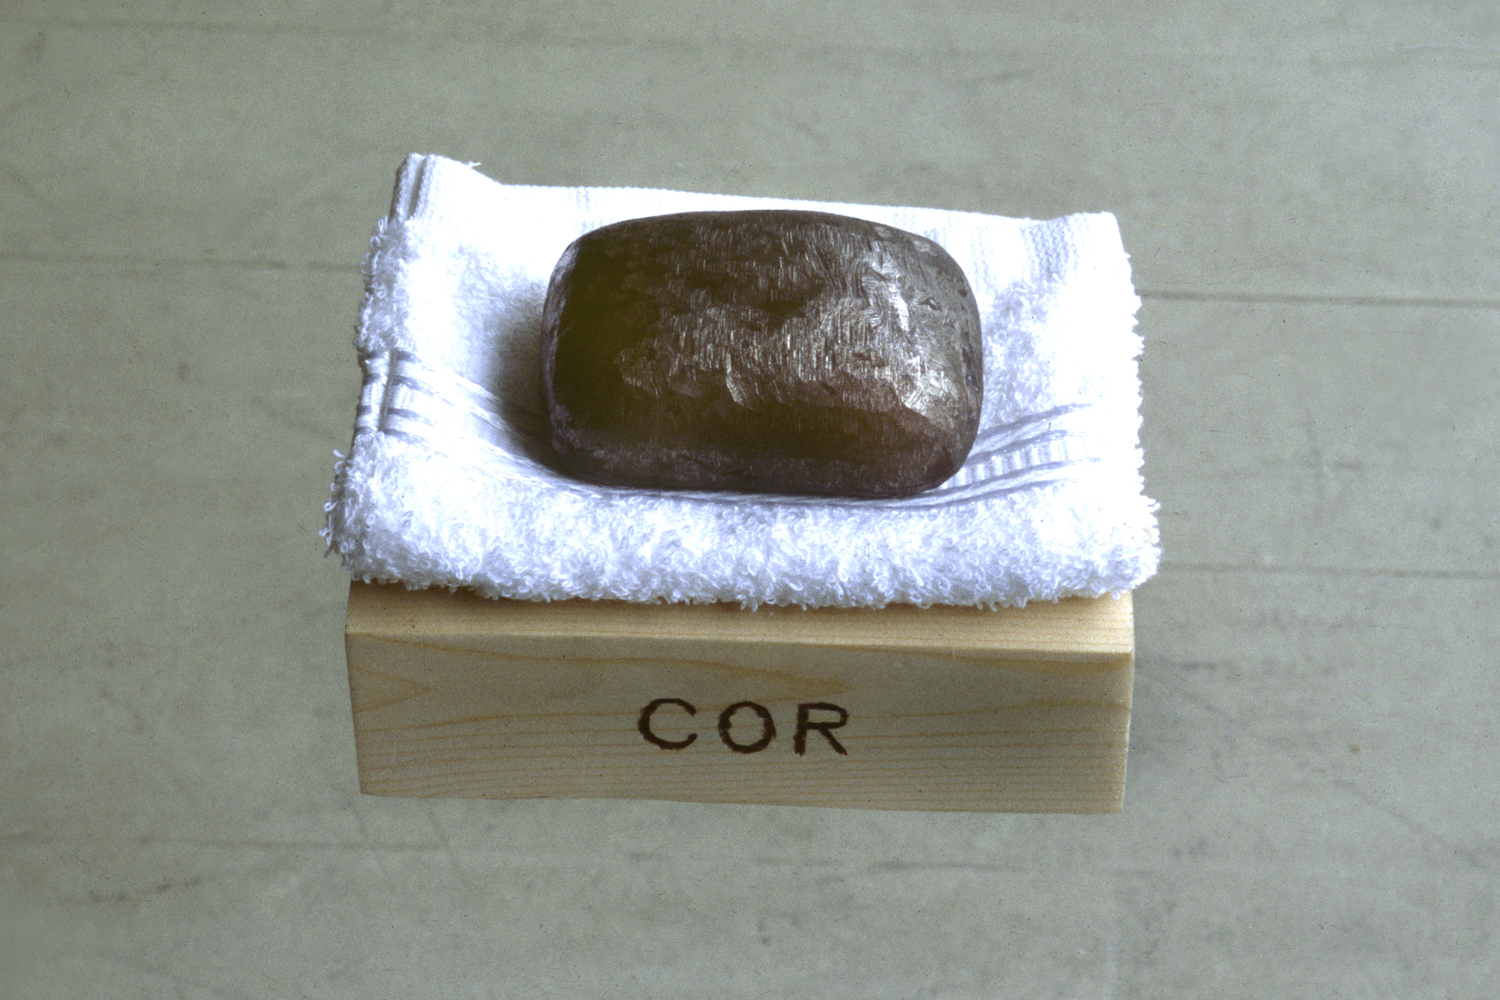 COR Soap